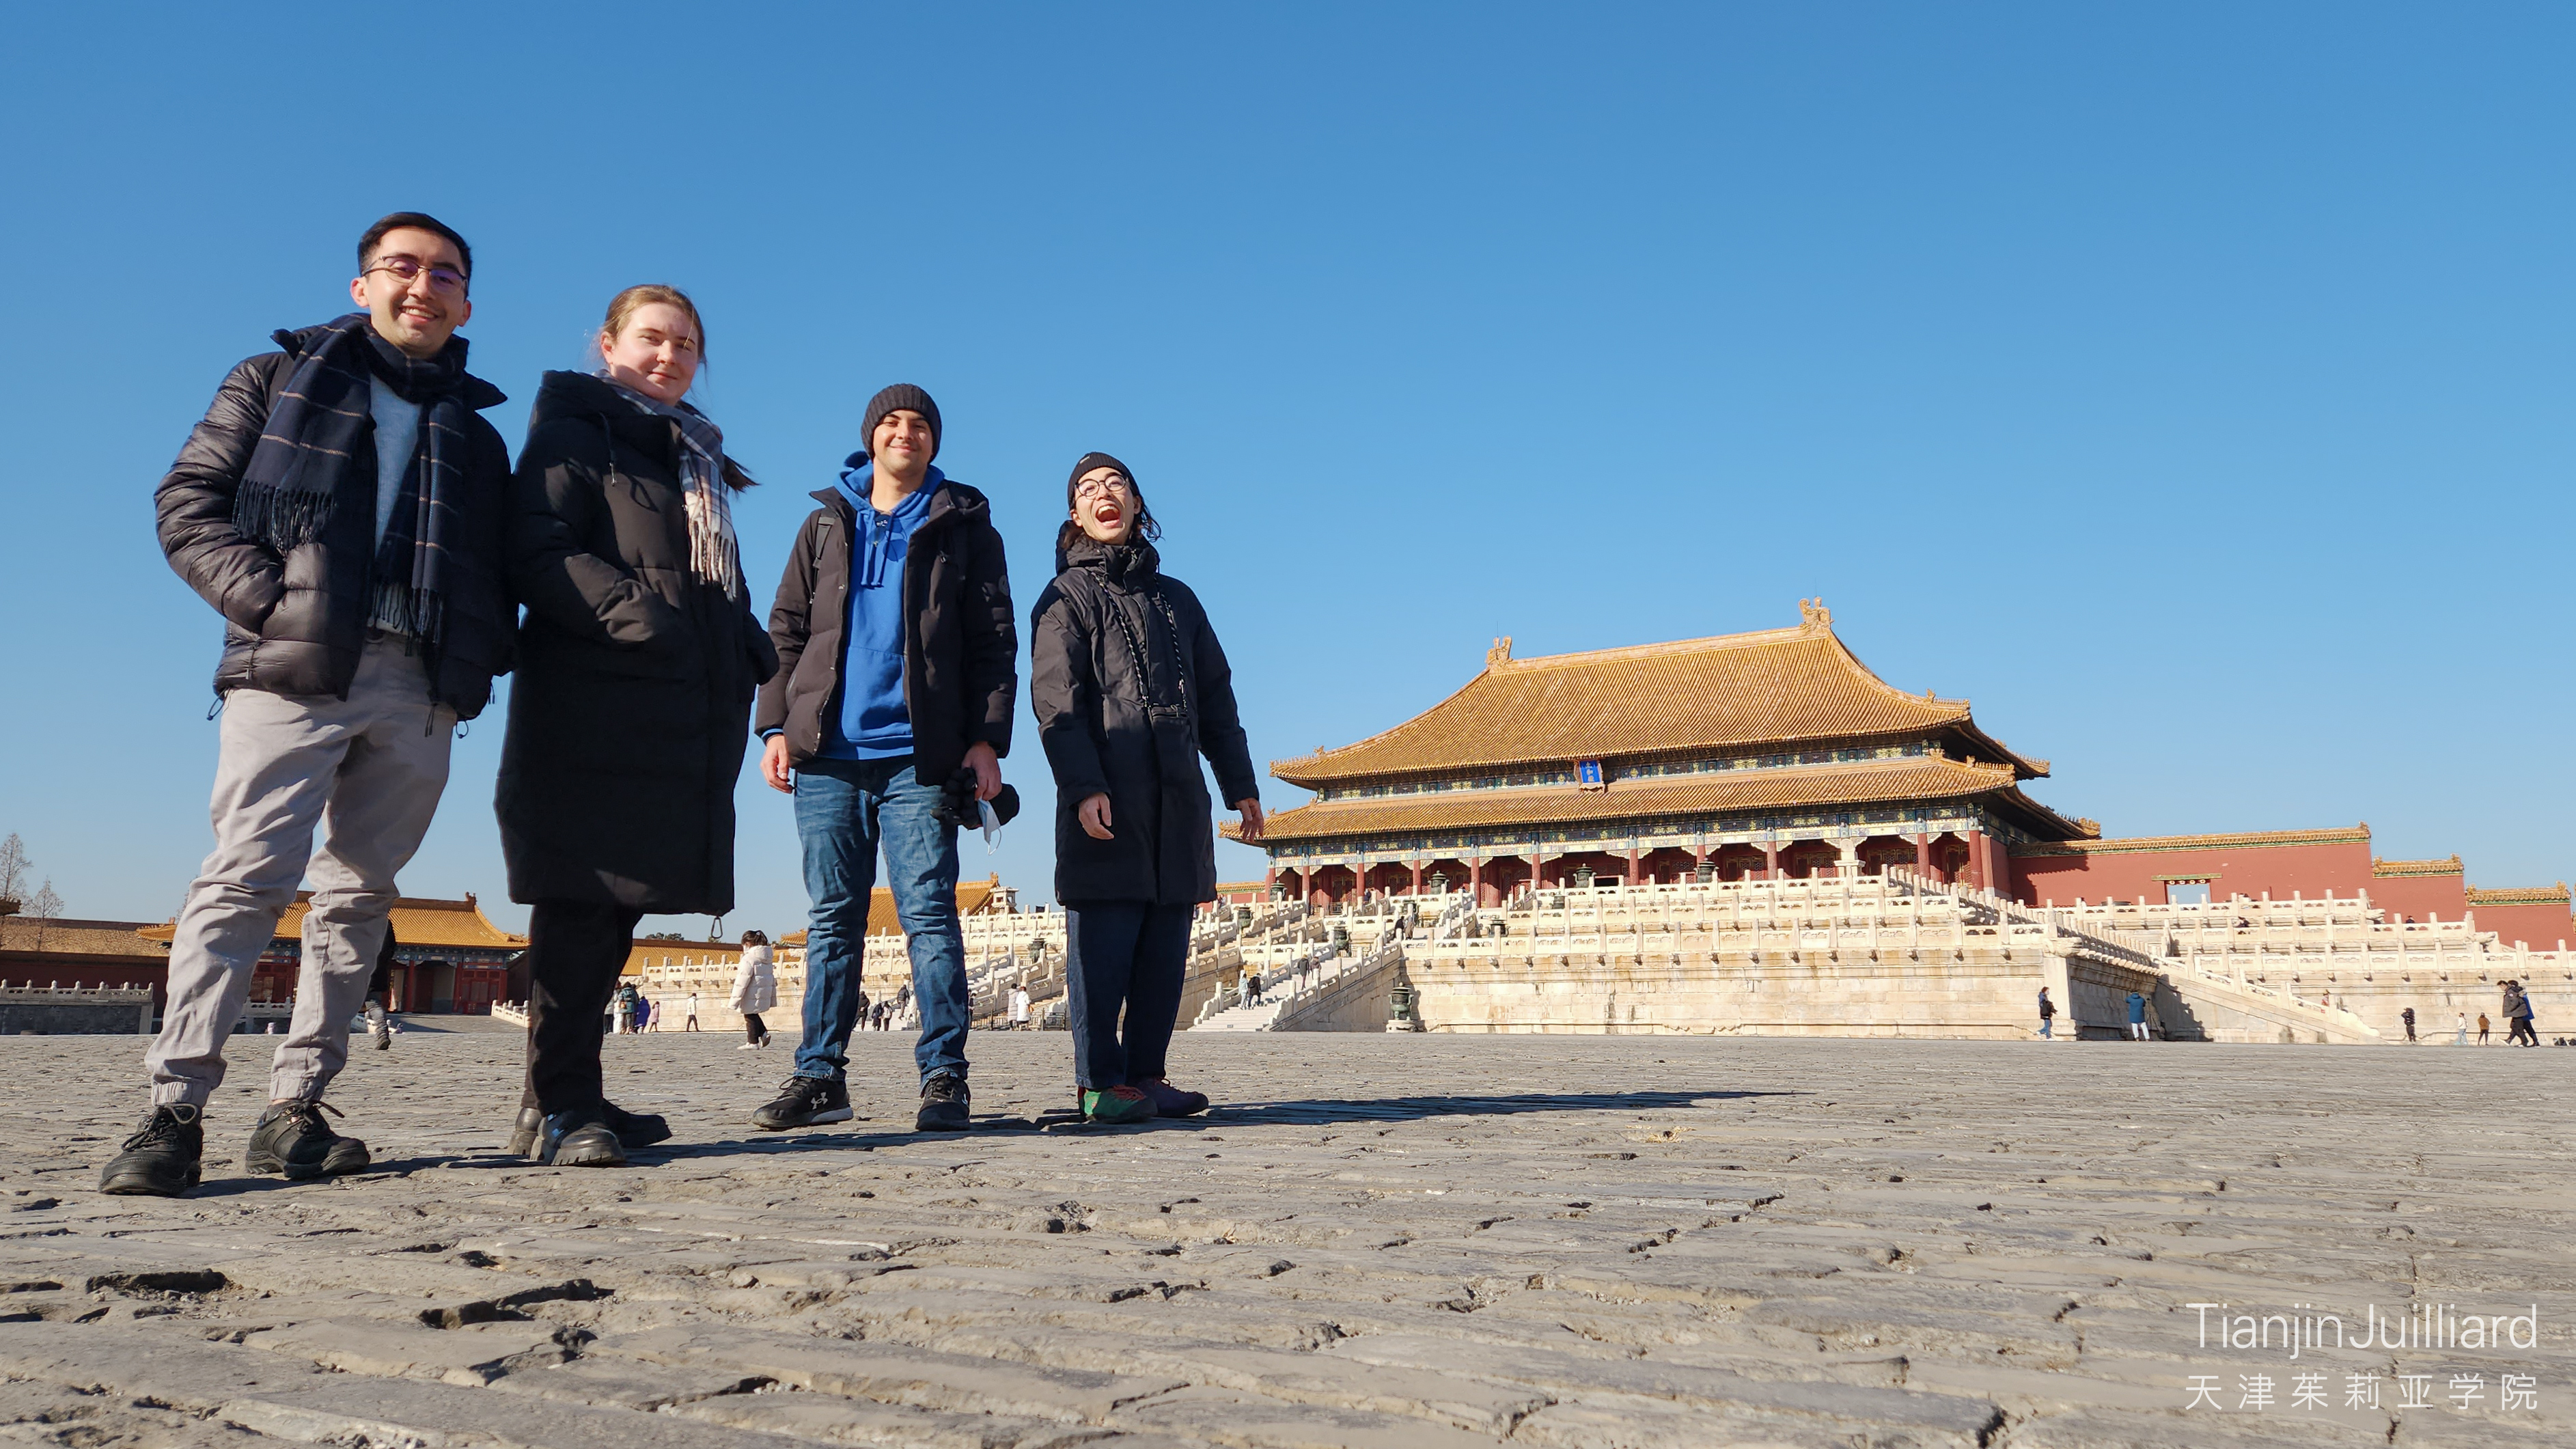 Tianjin Juilliard students visiting Beijing